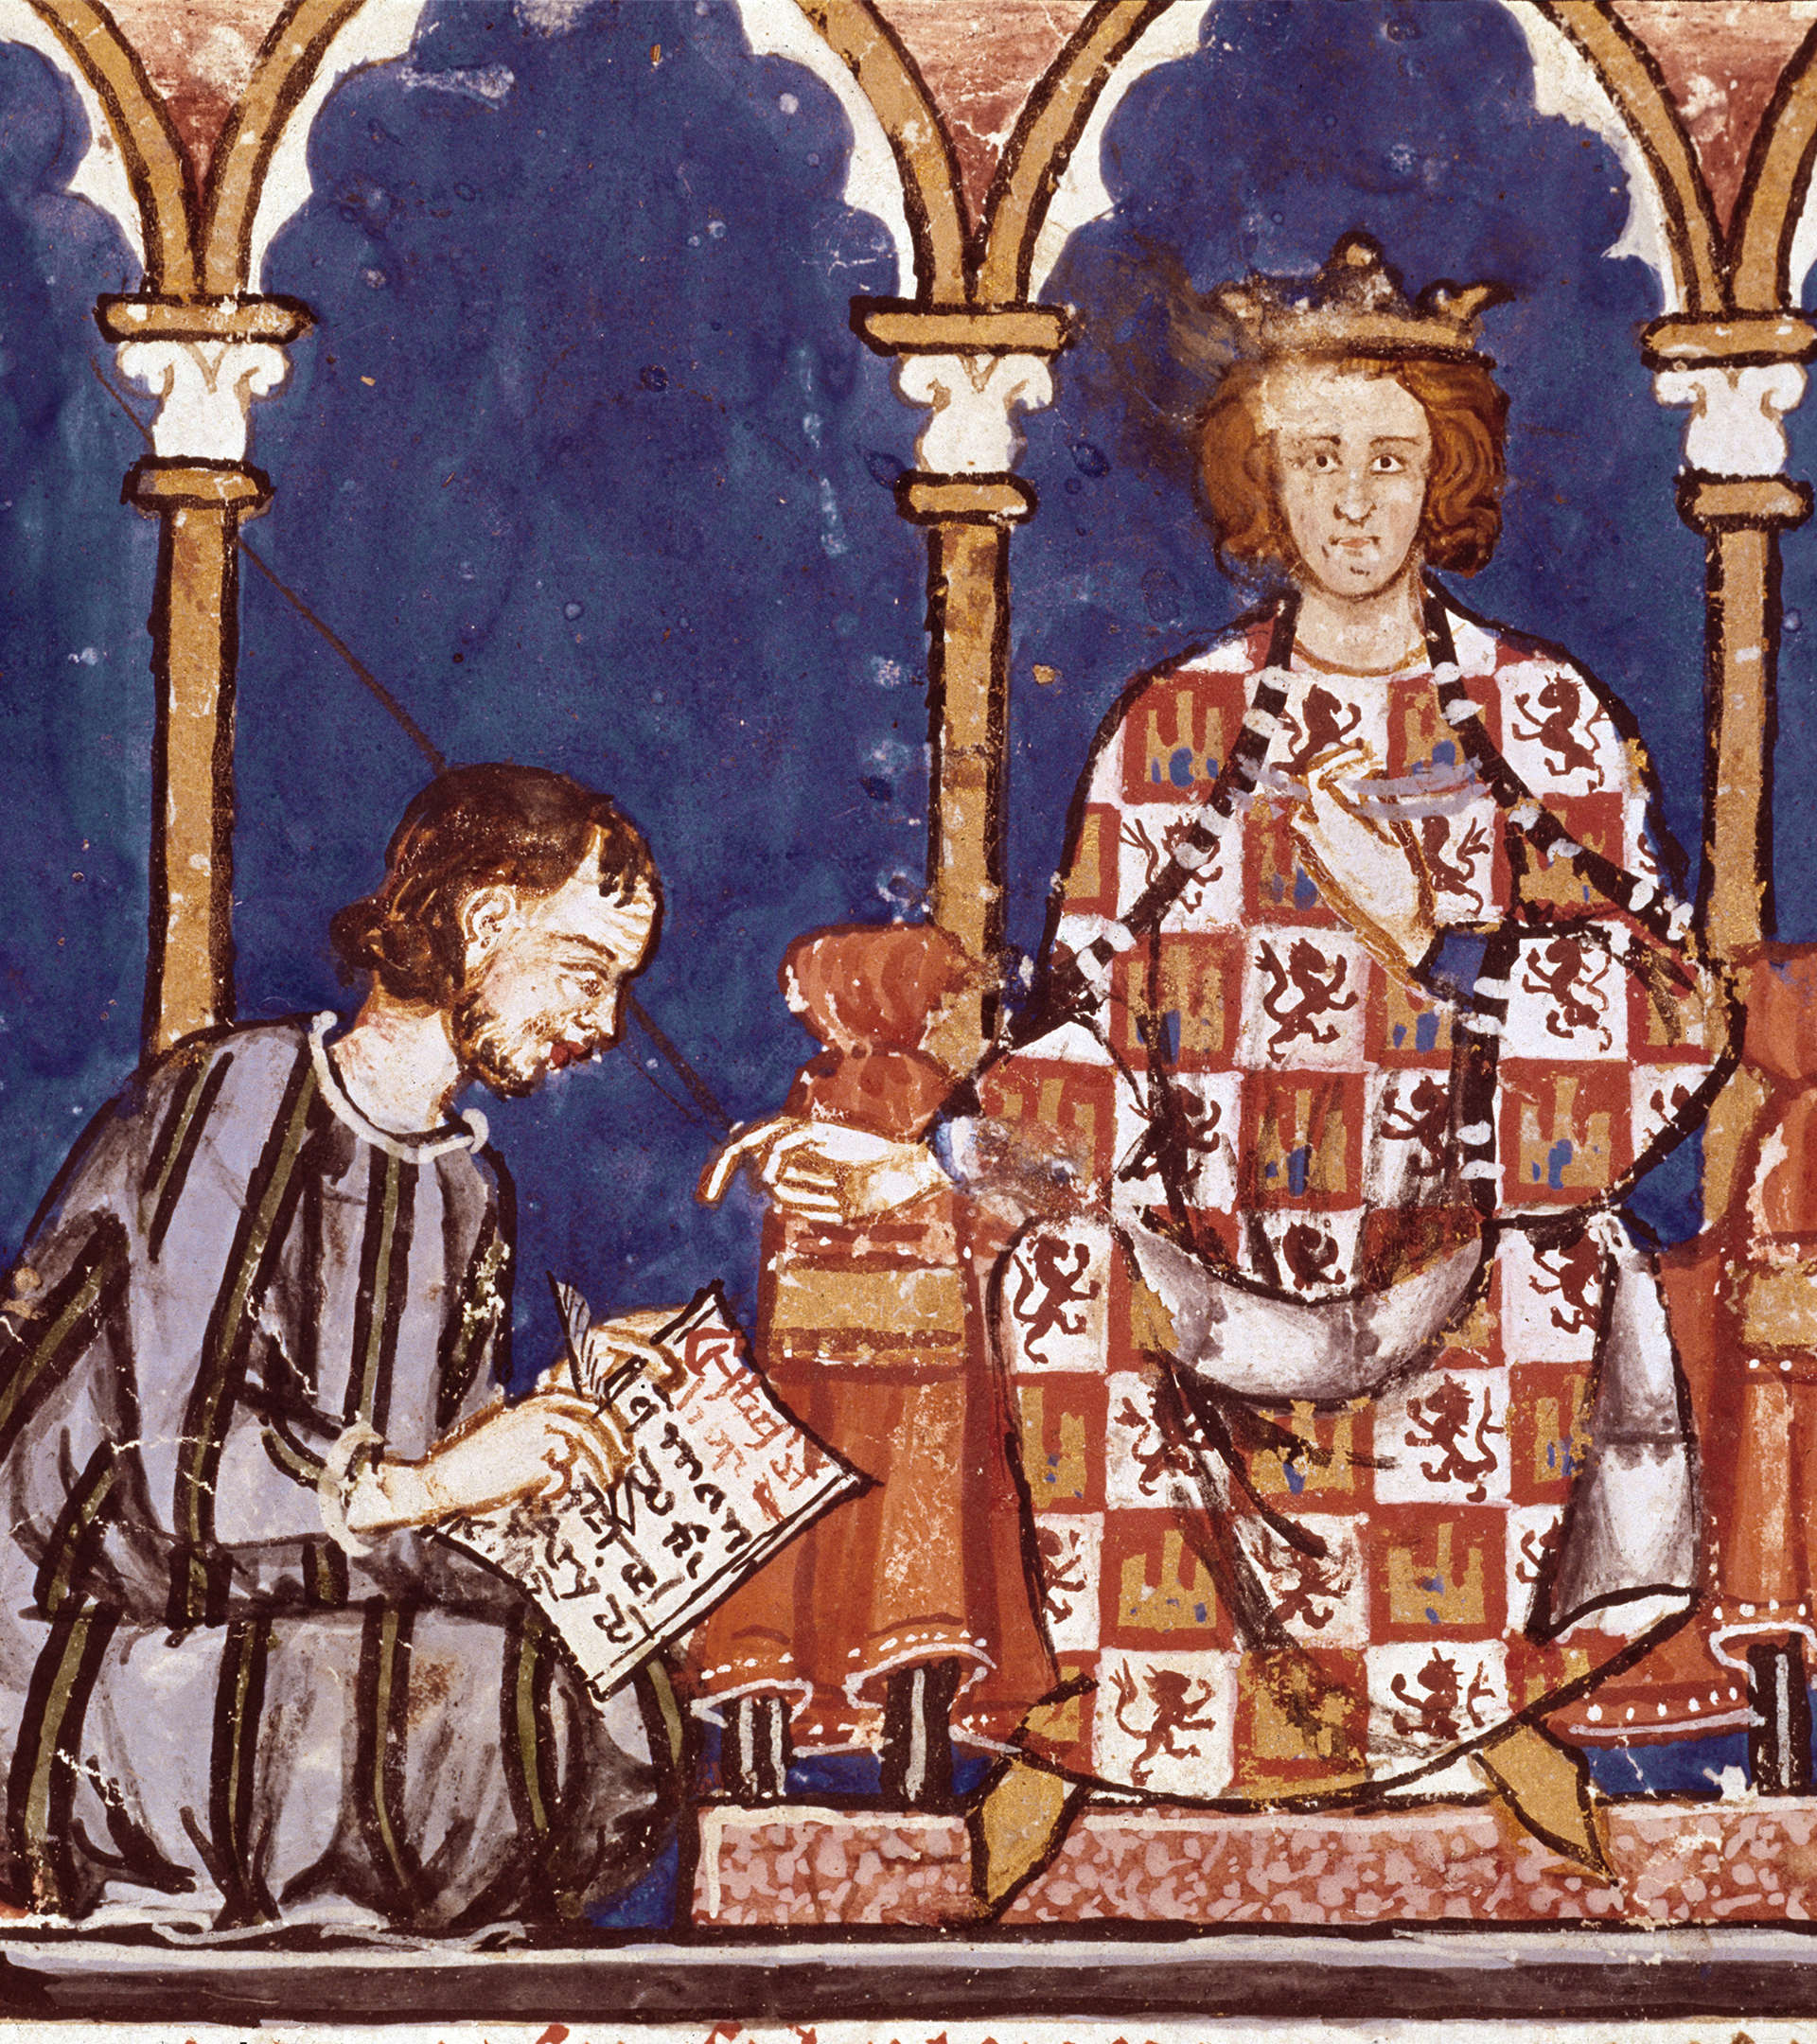 Ocho siglos de Alfonso X el Sabio, el rey cosmopolita que forjó el primer Estado moderno de Europa